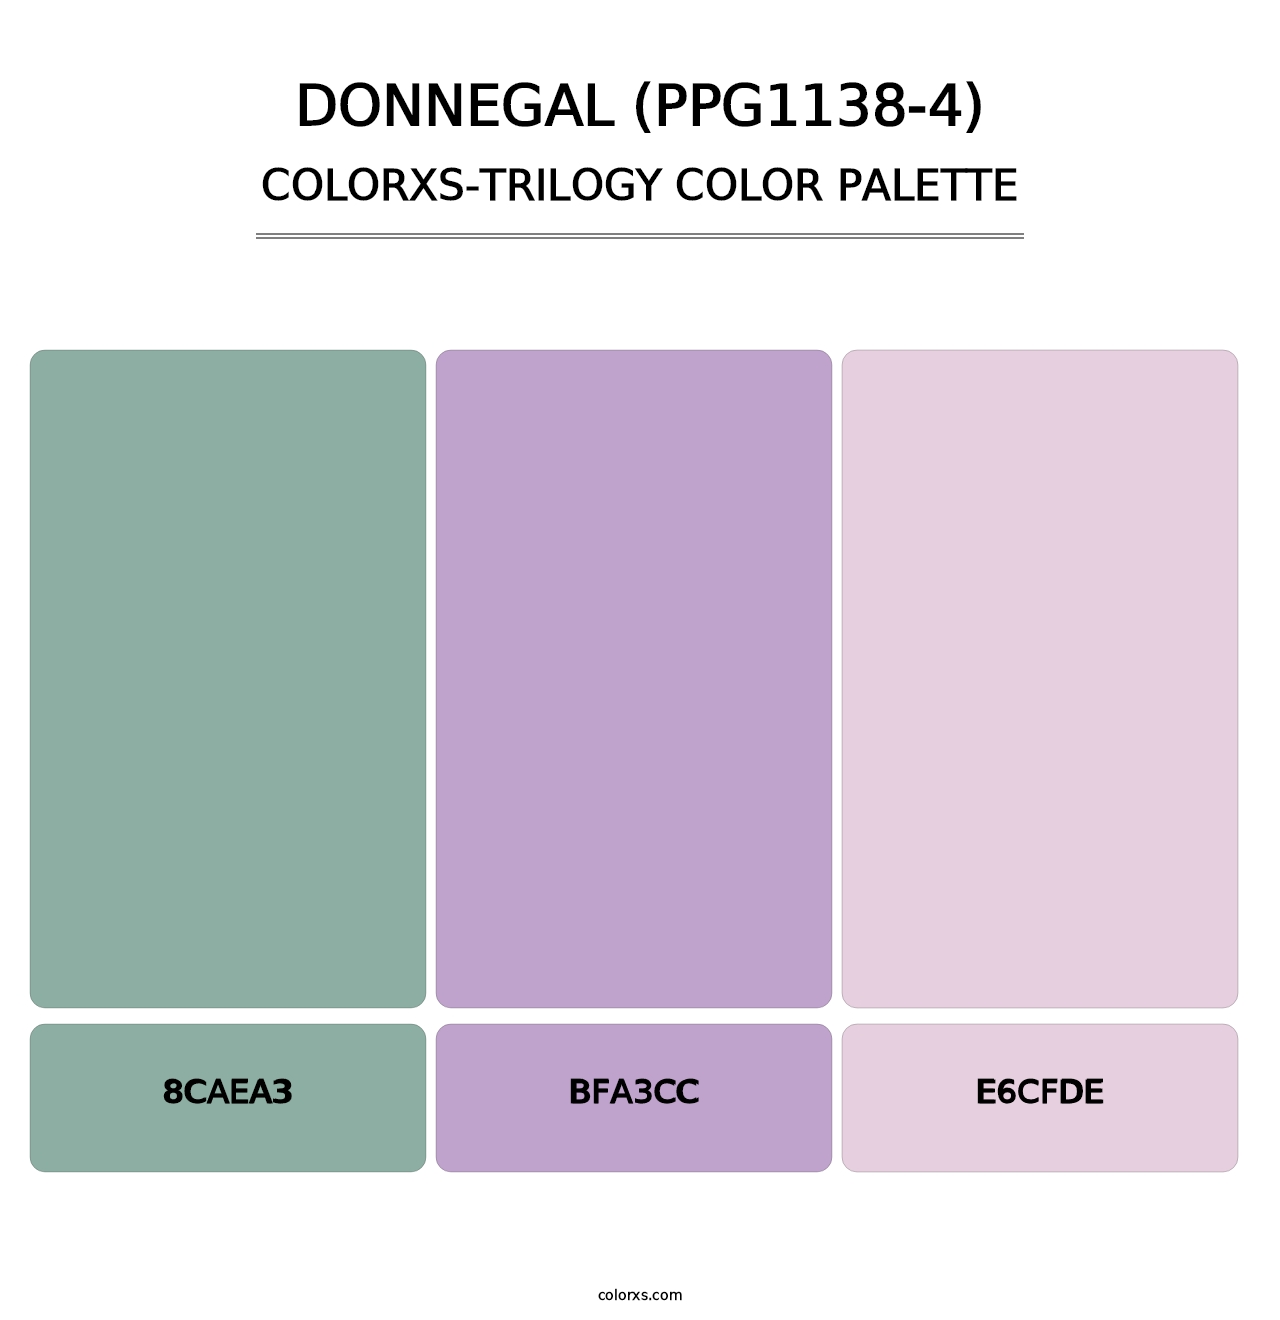 Donnegal (PPG1138-4) - Colorxs Trilogy Palette